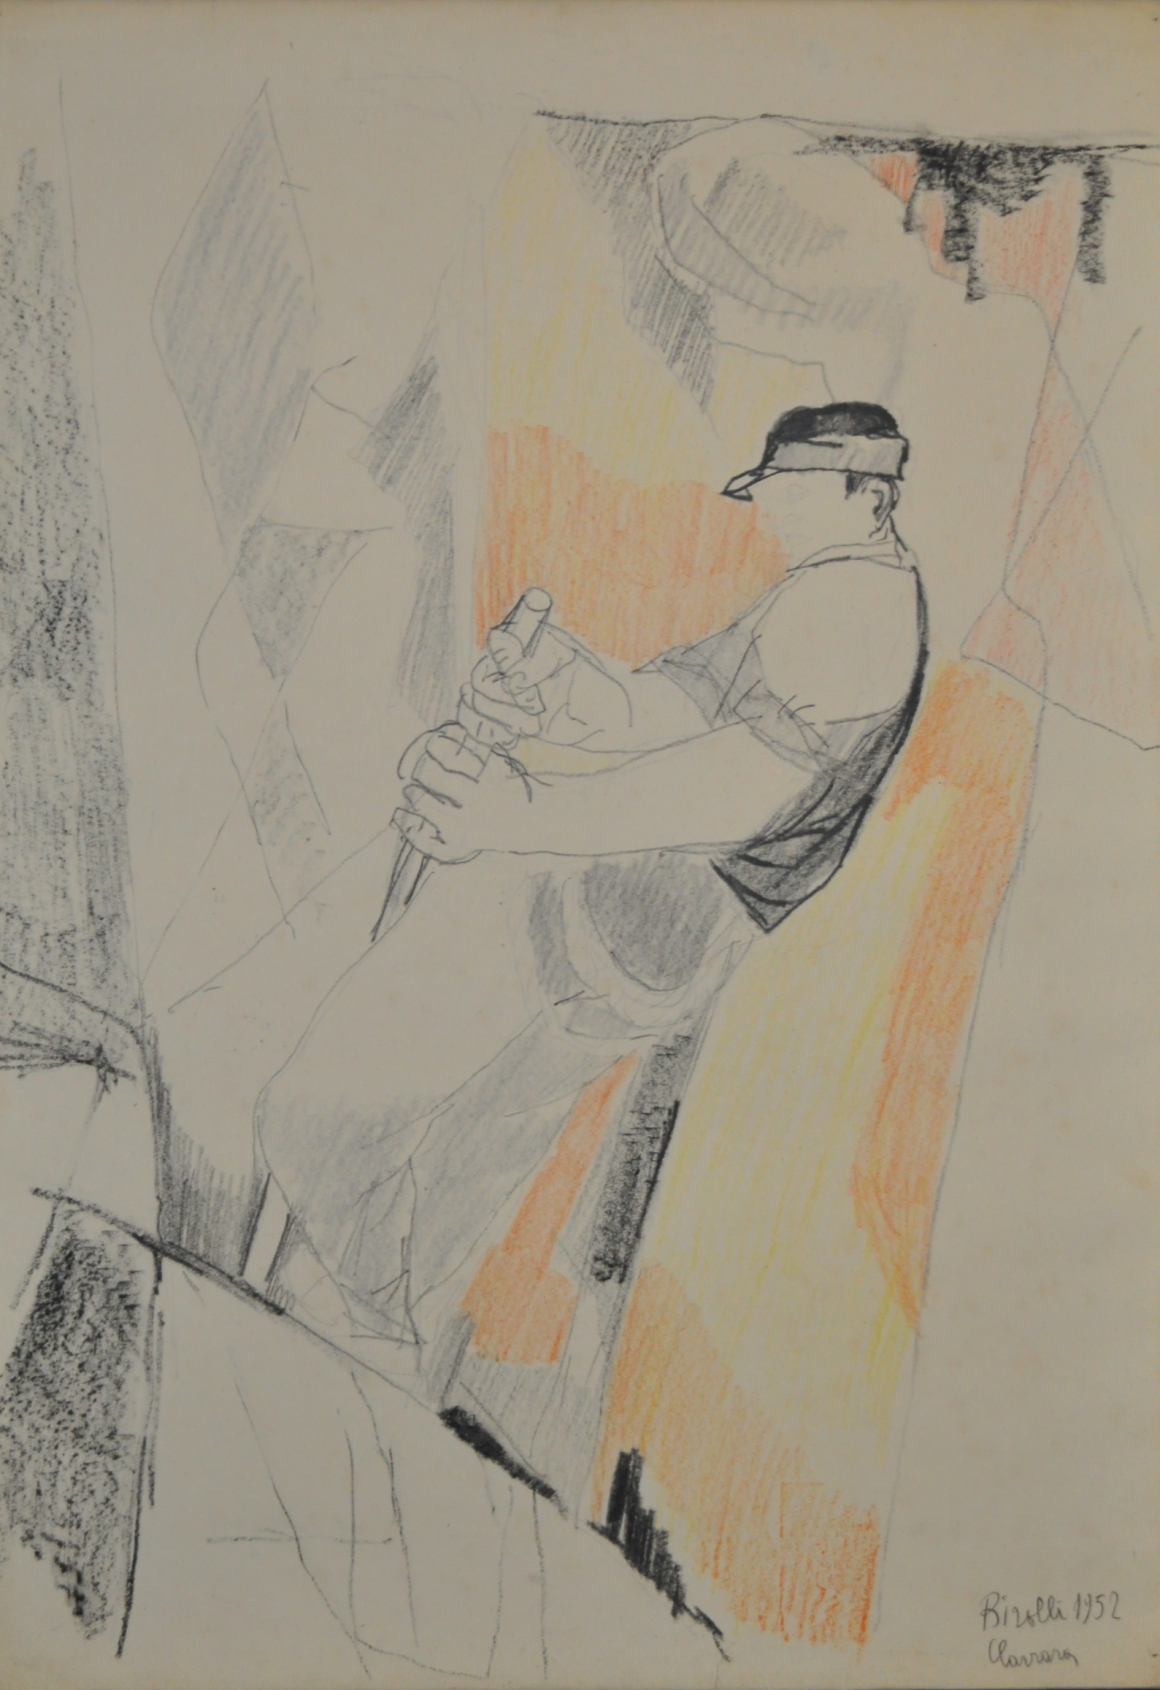 BIROLLI_Il tecchiatore_1952_tecnica mista su carta_70 x 50 cm